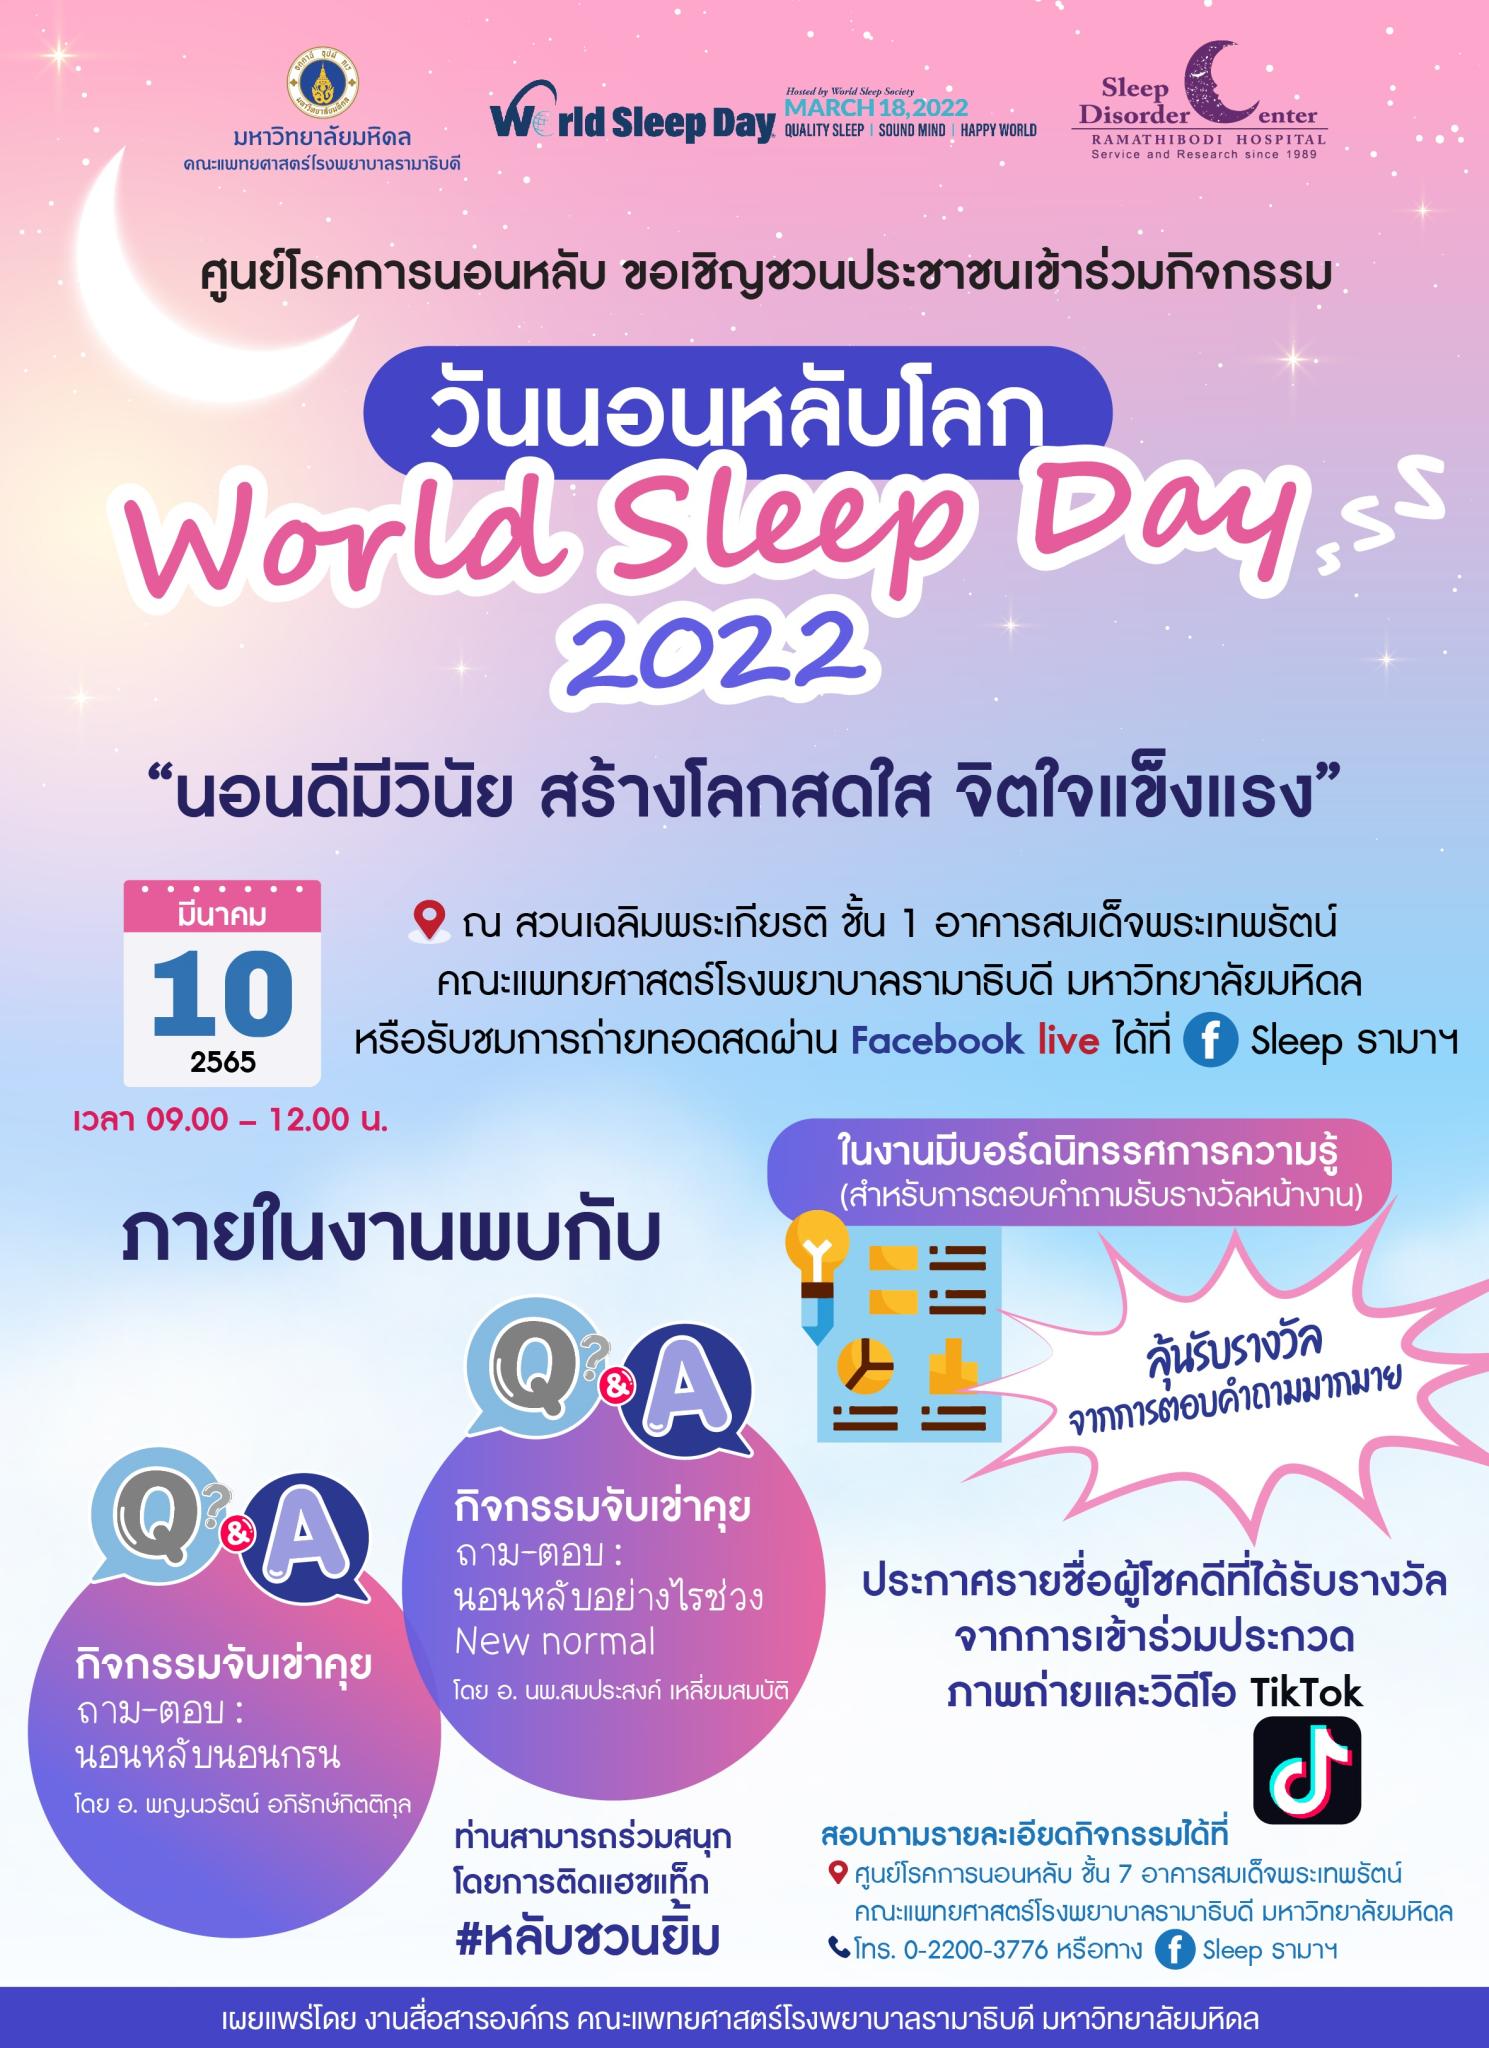 ศูนย์โรคการนอนหลับ ขอเชิญชวนประชาชนเข้าร่วมกิจกรรม วันนอนหลับโลก World Sleep Day 2022 "นอนดีมีวินัย สร้างโลกสดใส จิตใจแข็งแรง"